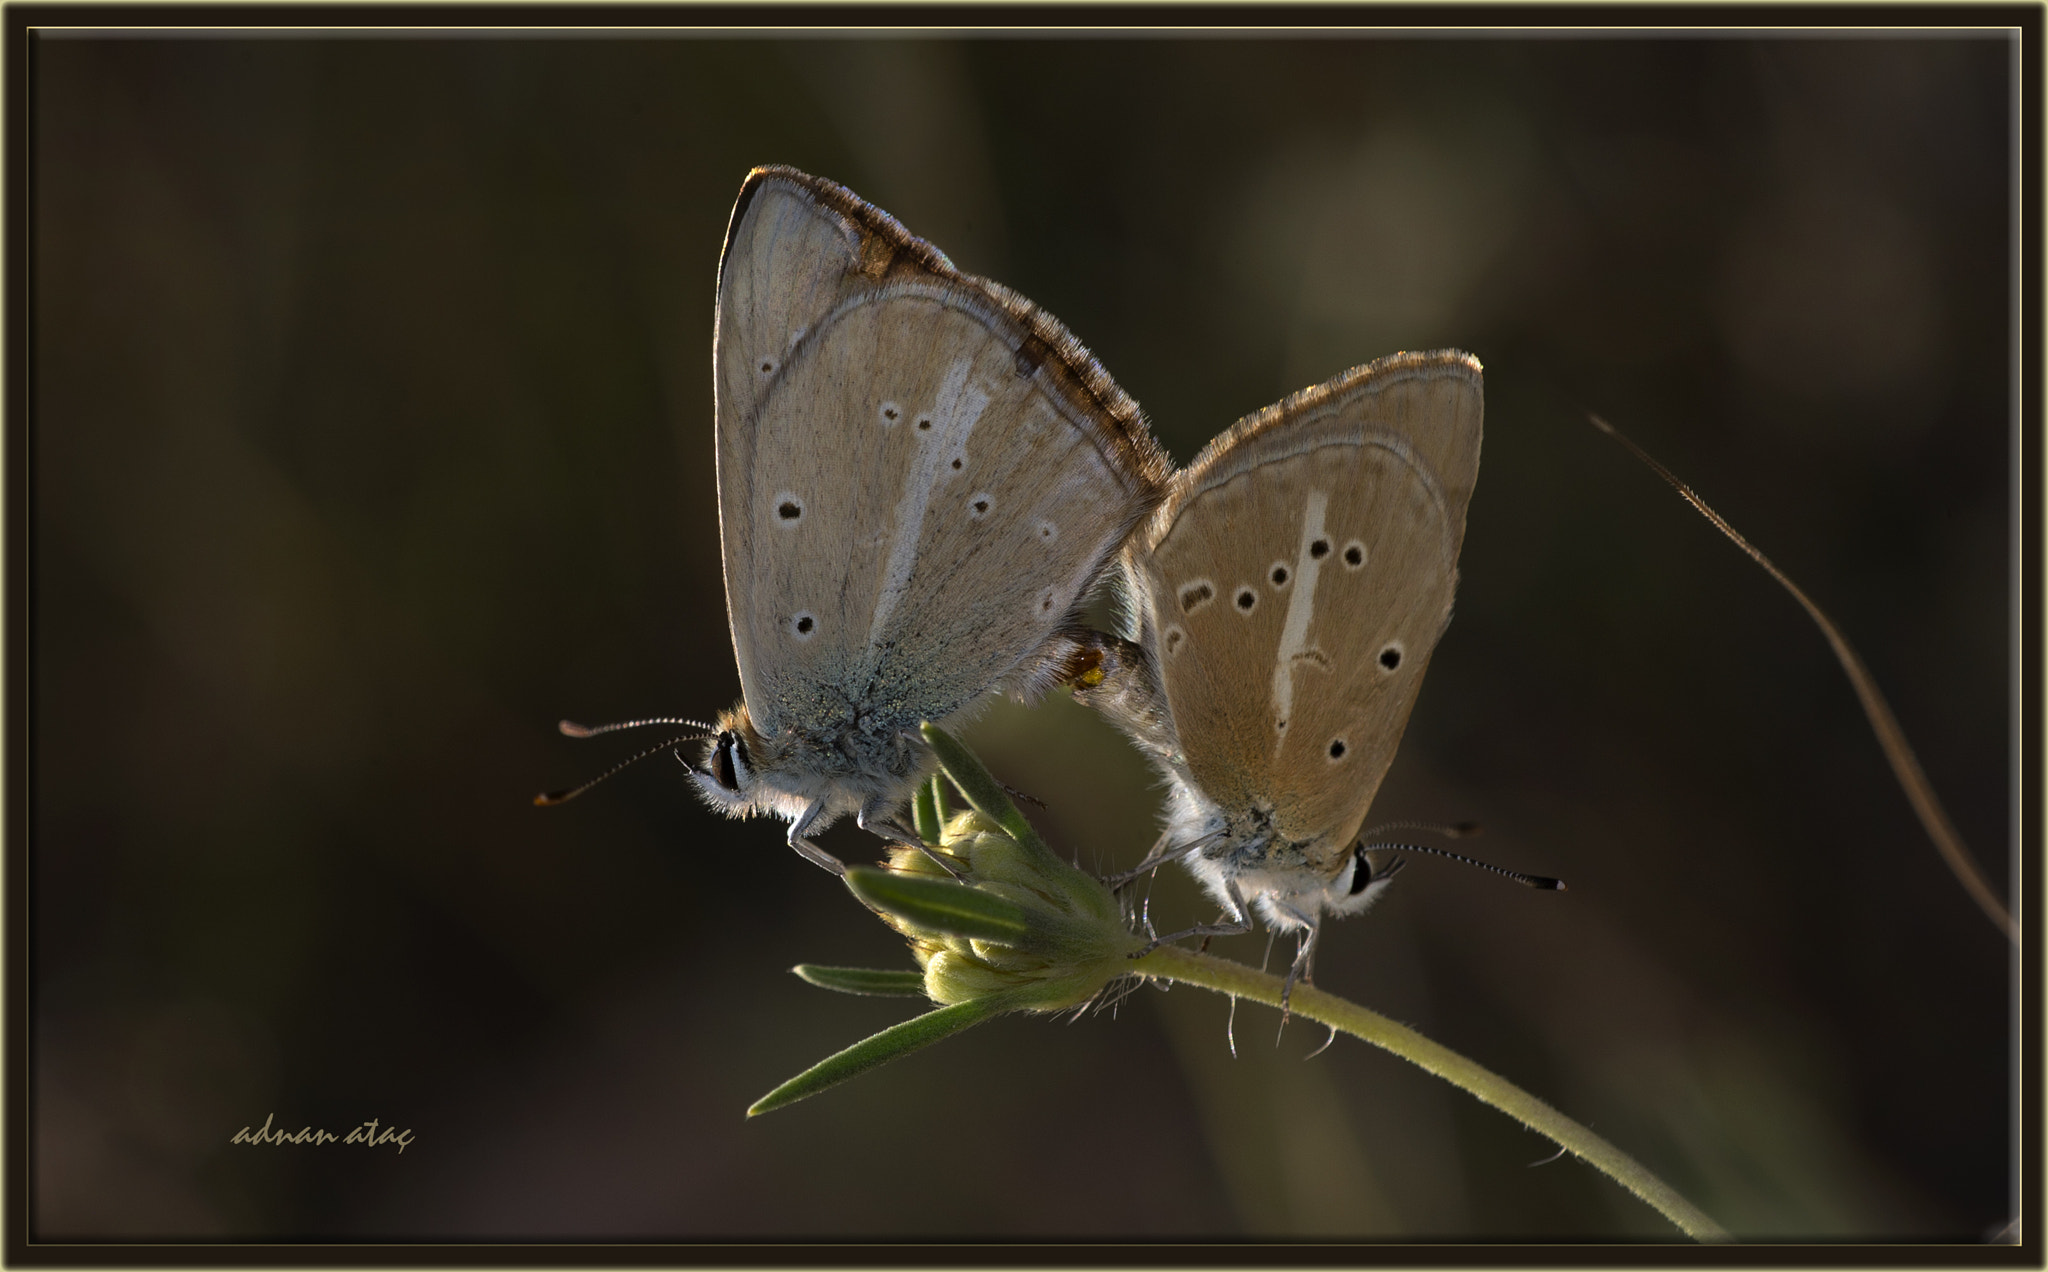 Nikon D4 sample photo. Çokgözlü anadolu beyazı - turkish furry blue - polyommatus menalcas photography